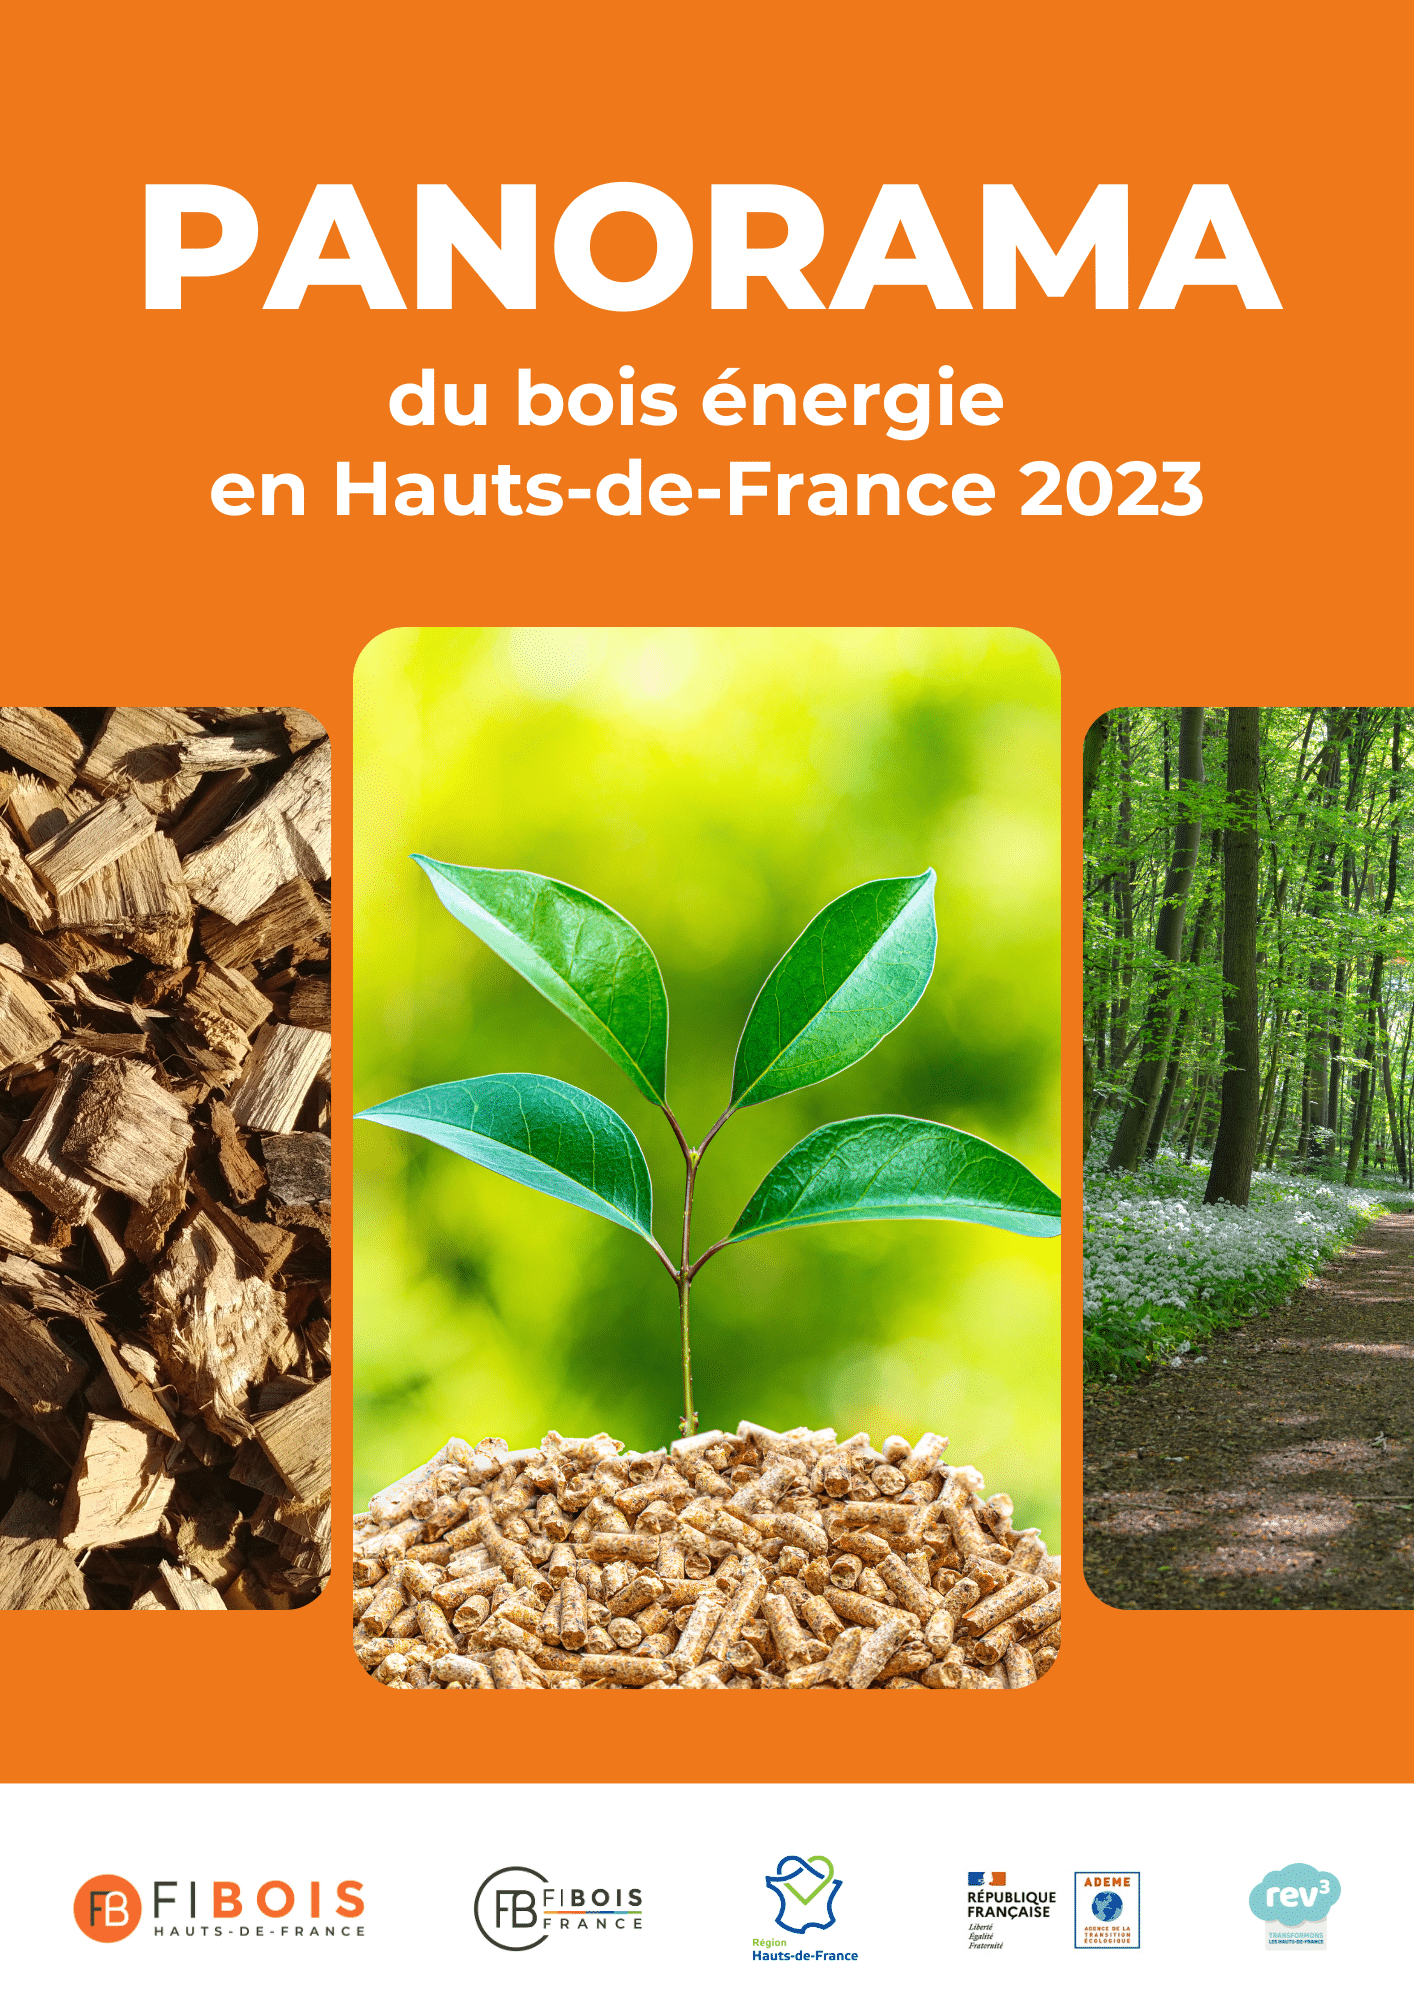 PANORAMA du bois énergie en Hauts-de-France 2023